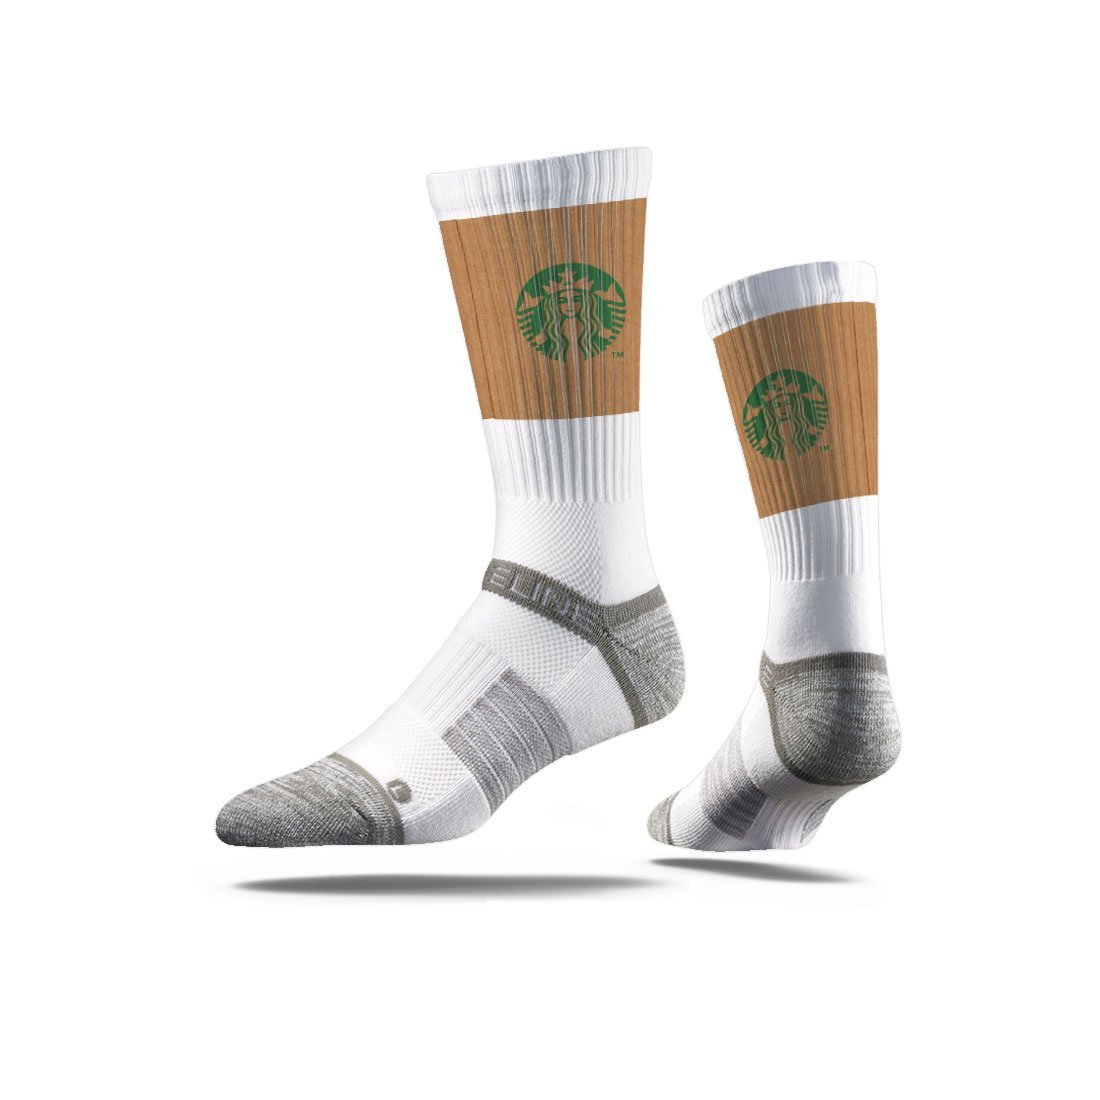 customize socks